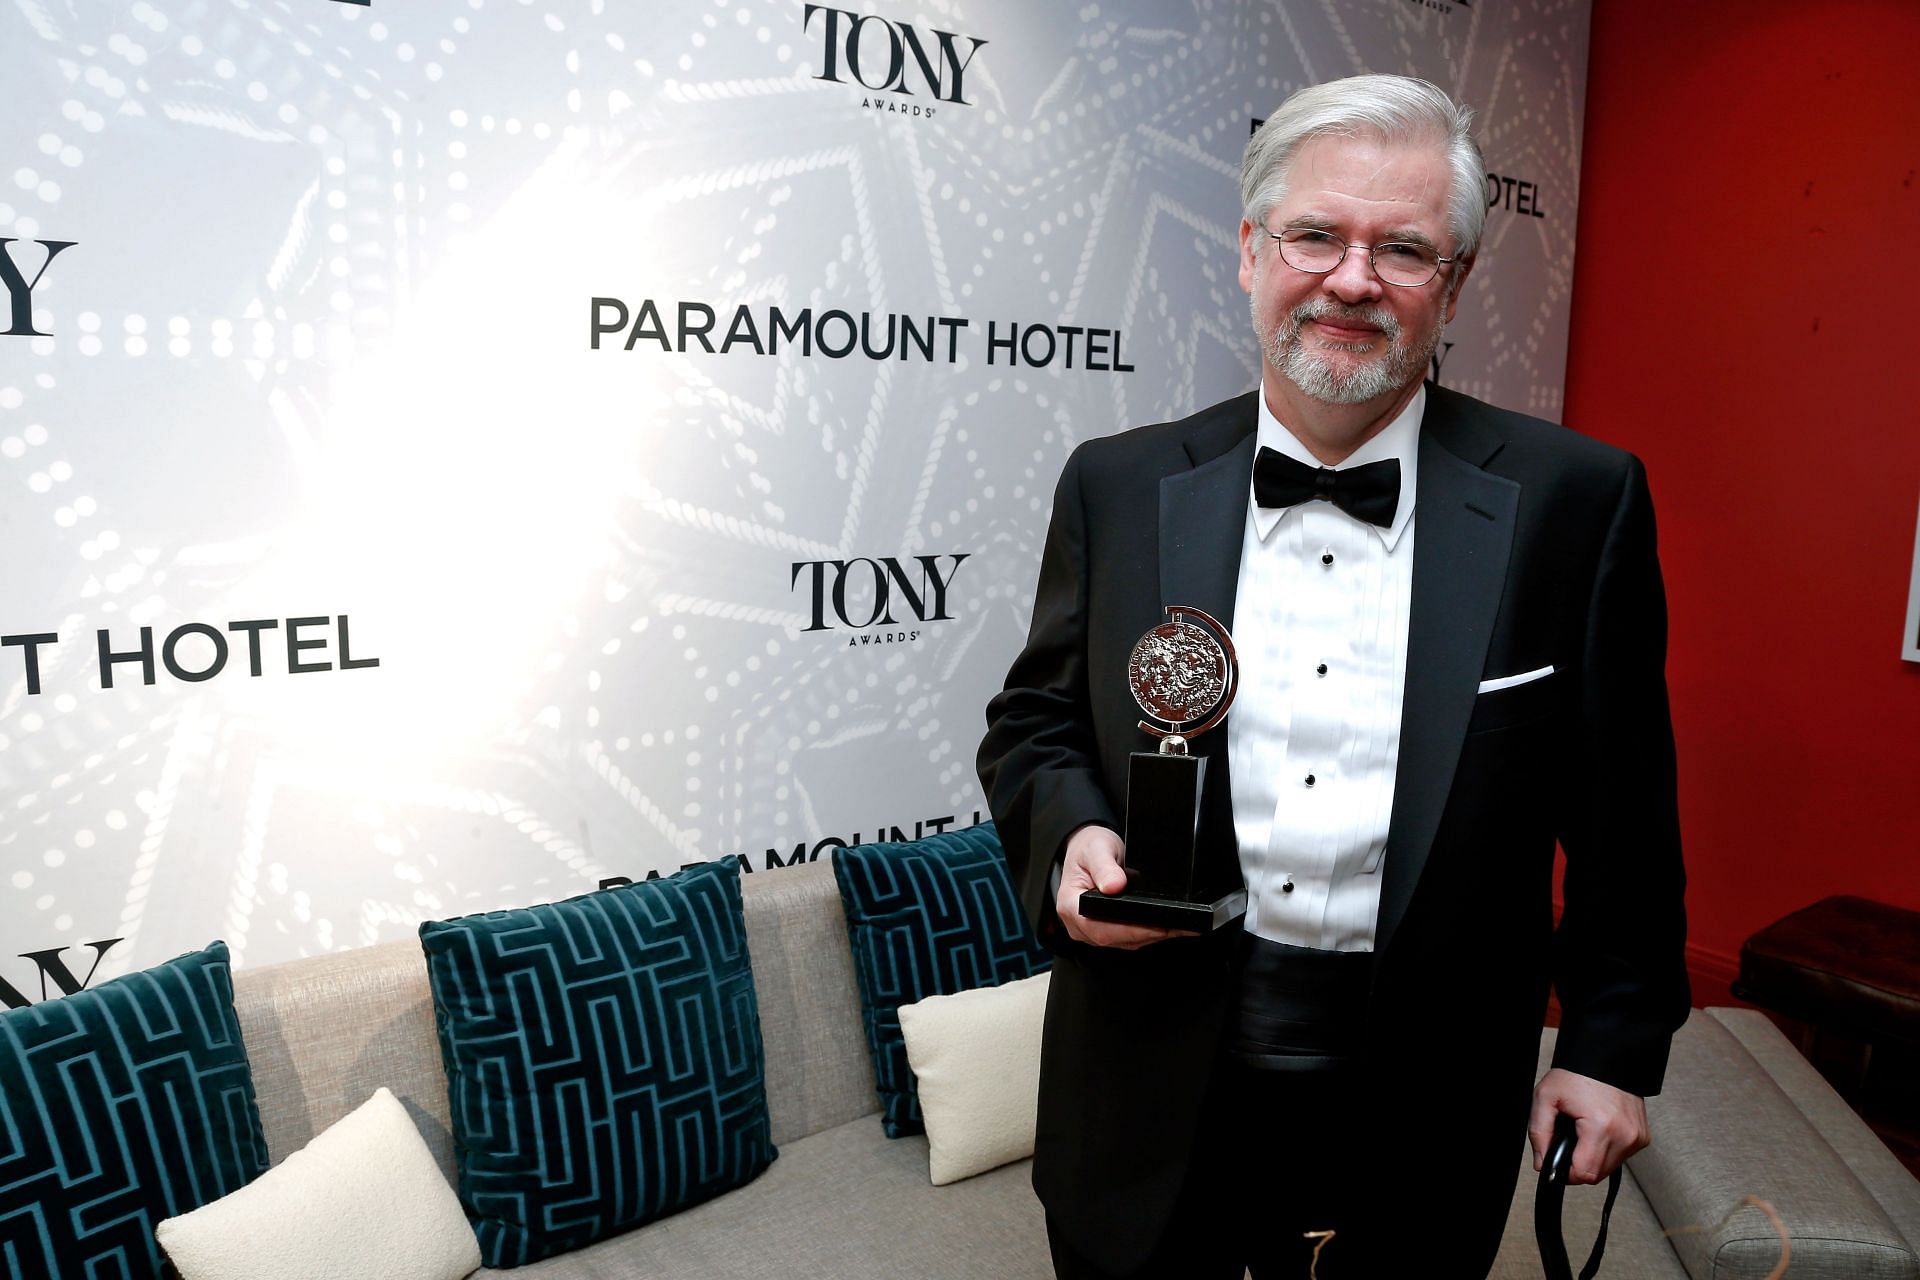 2013 Tony Awards - Paramount Hotel Winners